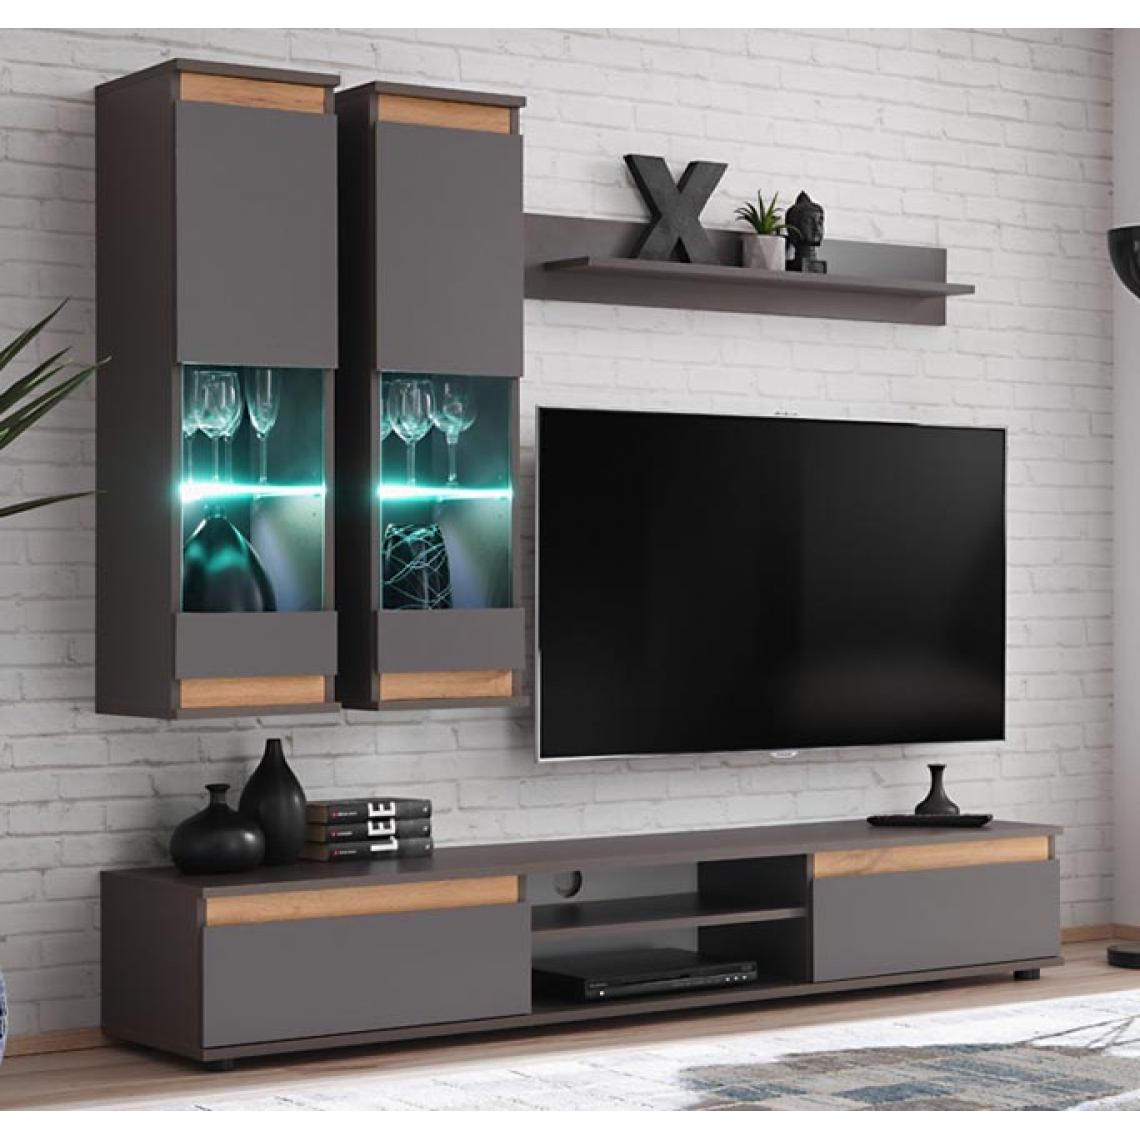 Design Ameublement - Meuble Mural TV modèle Borneo couleur gris anthracite et chêne (175m) - Meubles TV, Hi-Fi